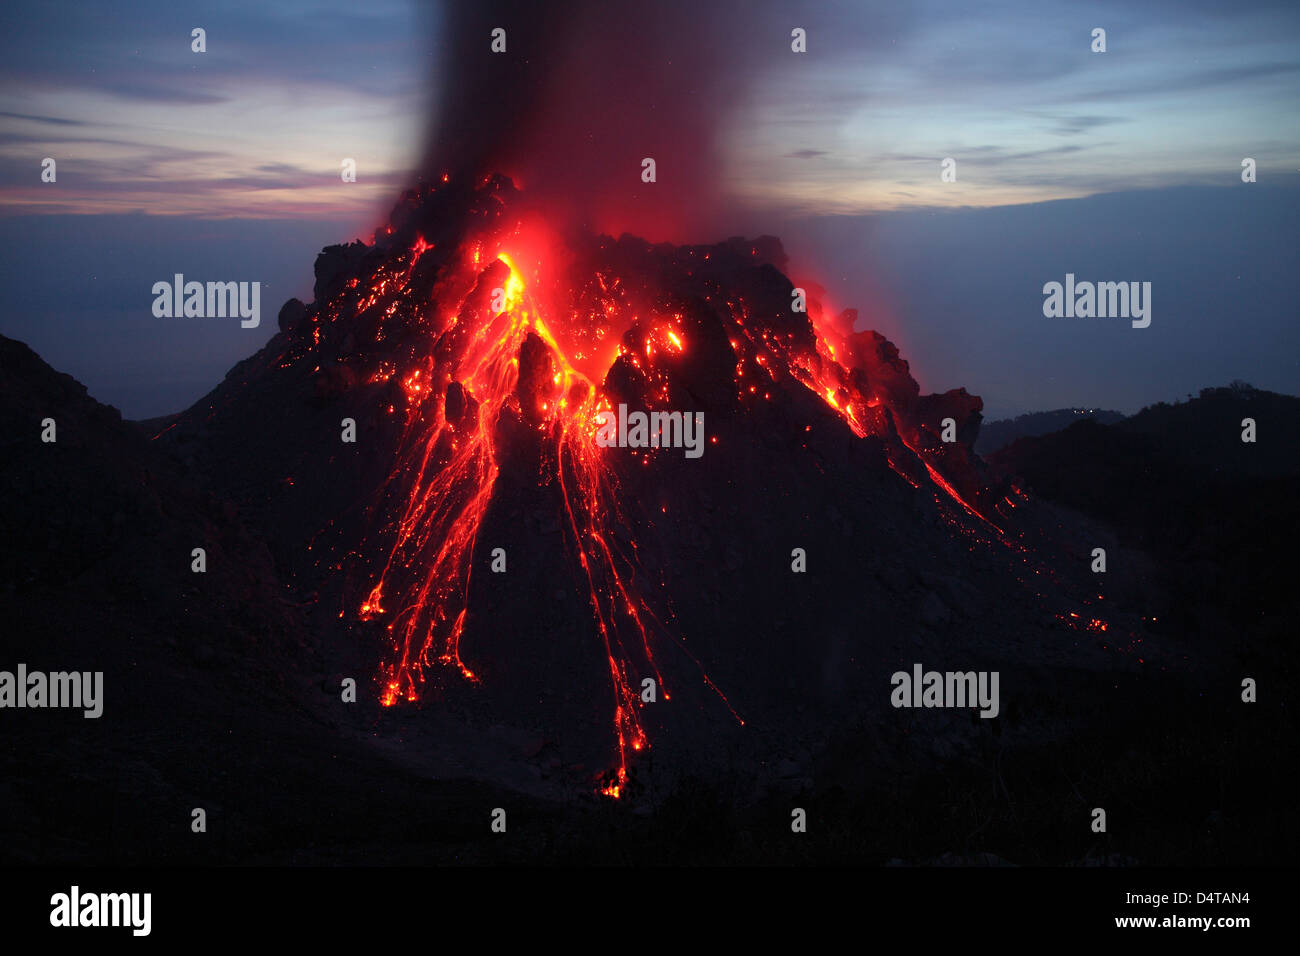 30 novembre 2012 - incandescente Rerombola duomo di lava di Paluweh (o) Rokatenda vulcano durante l eruzione del 2012, Flores, Indonesia. Foto Stock